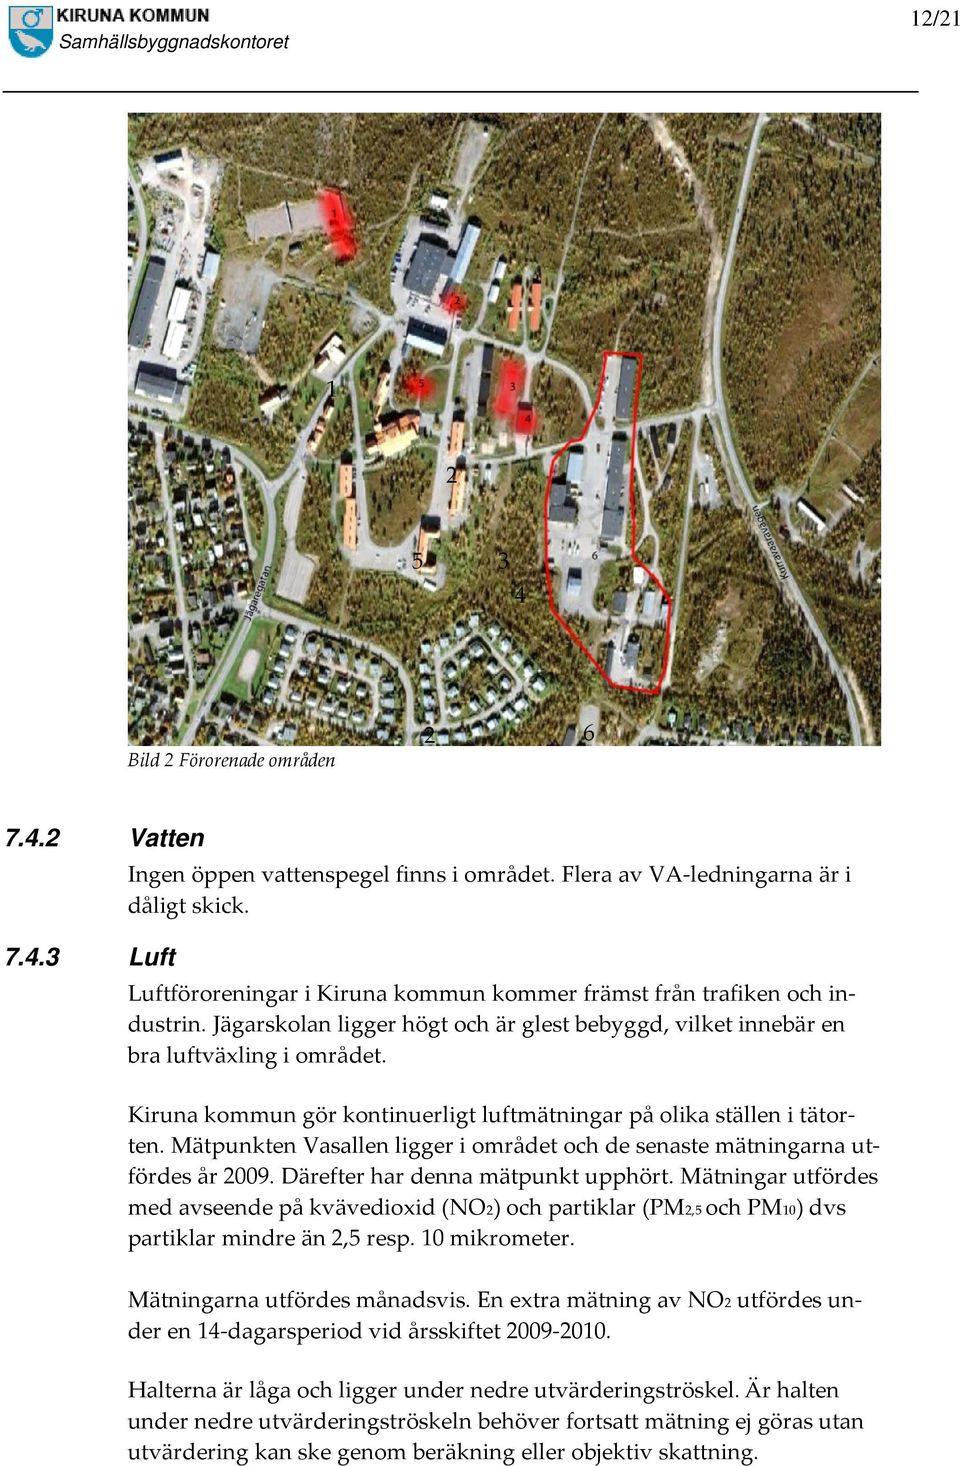 Kiruna kommun gör kontinuerligt luftmätningar på olika ställen i tätorten. Mätpunkten Vasallen ligger i området och de senaste mätningarna utfördes år 2009. Därefter har denna mätpunkt upphört.